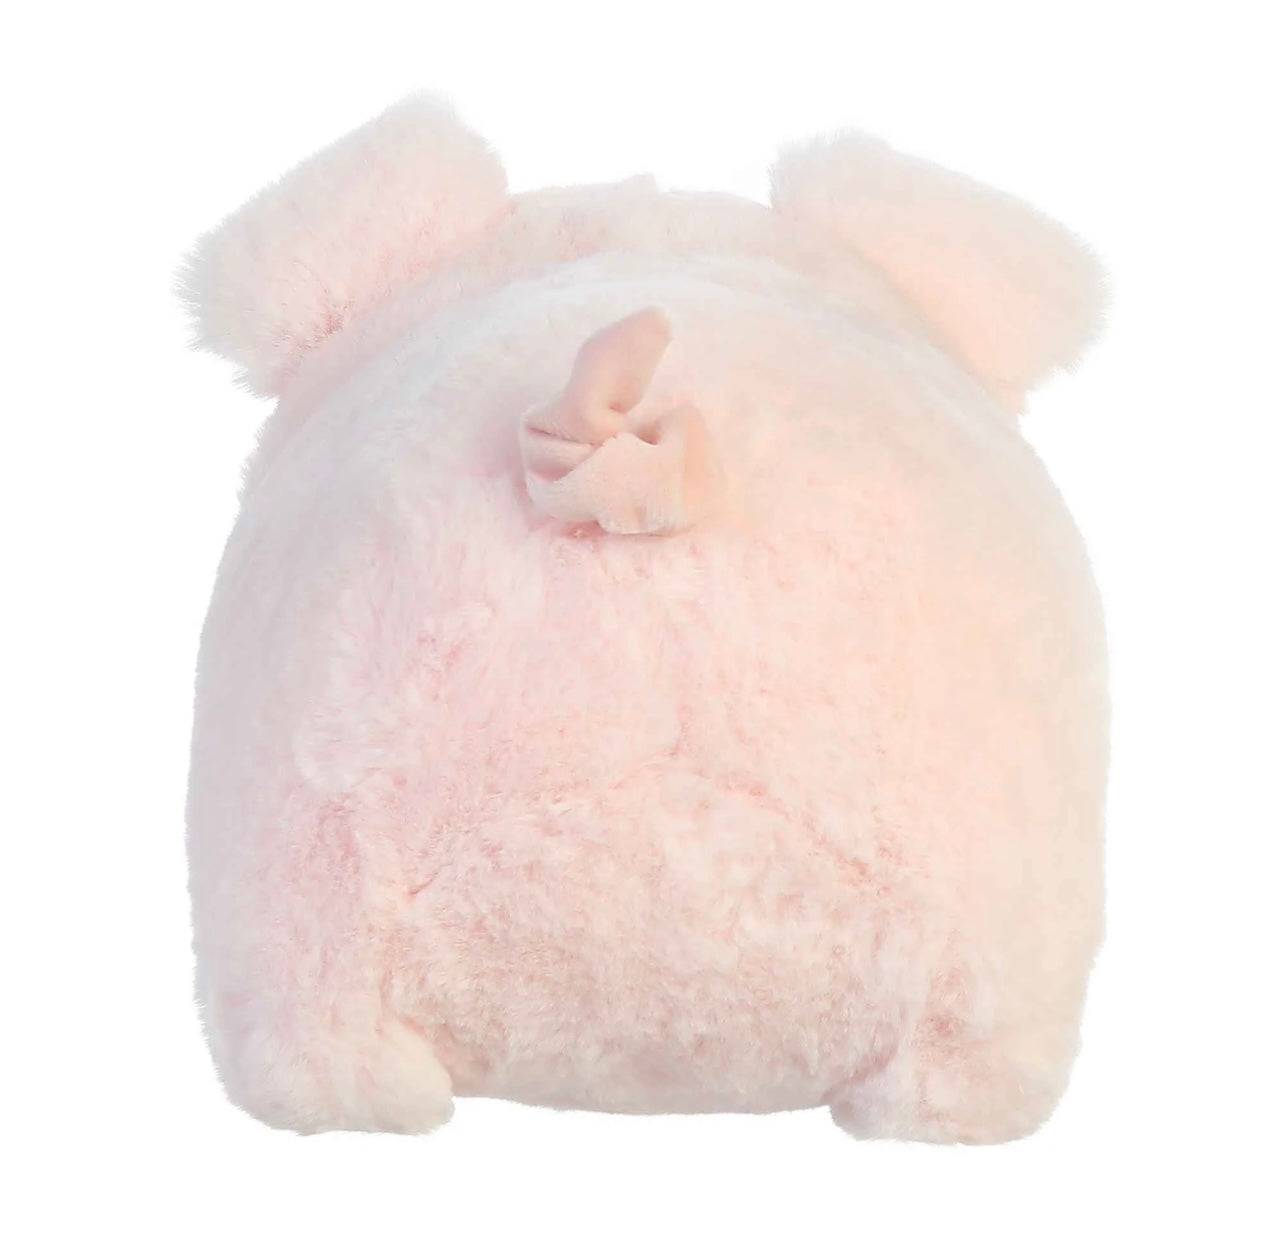 Spudsters Cutie Pig